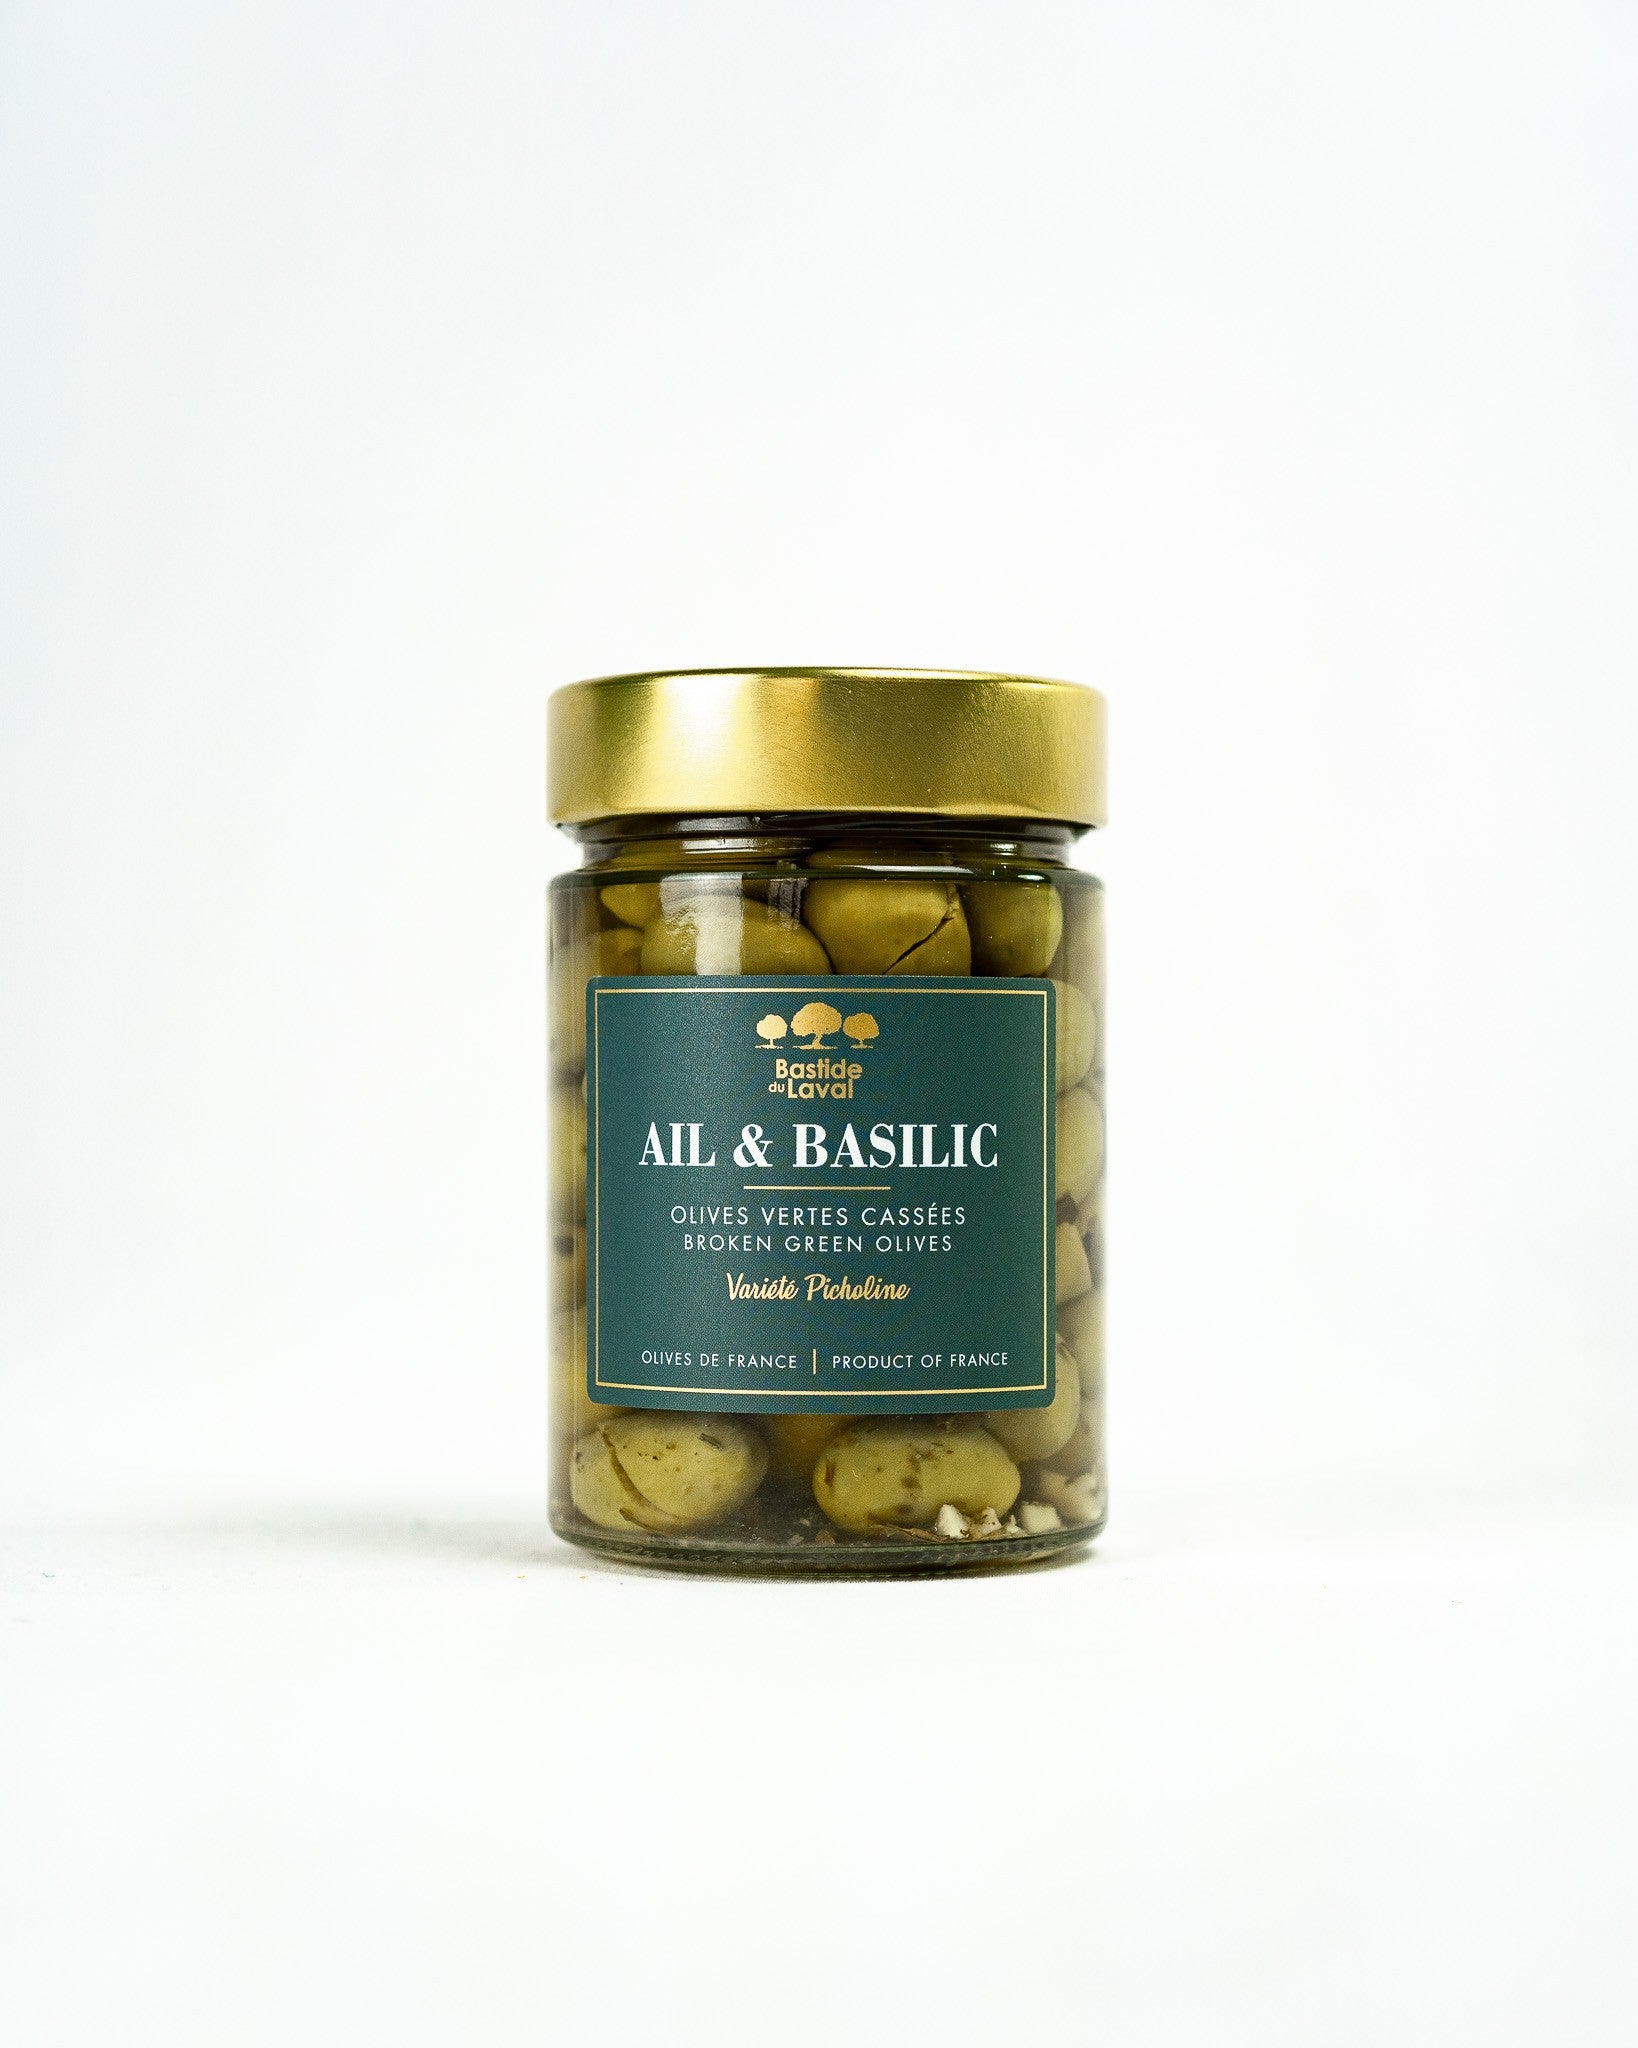 Broken Picholine Olives Garlic Basil